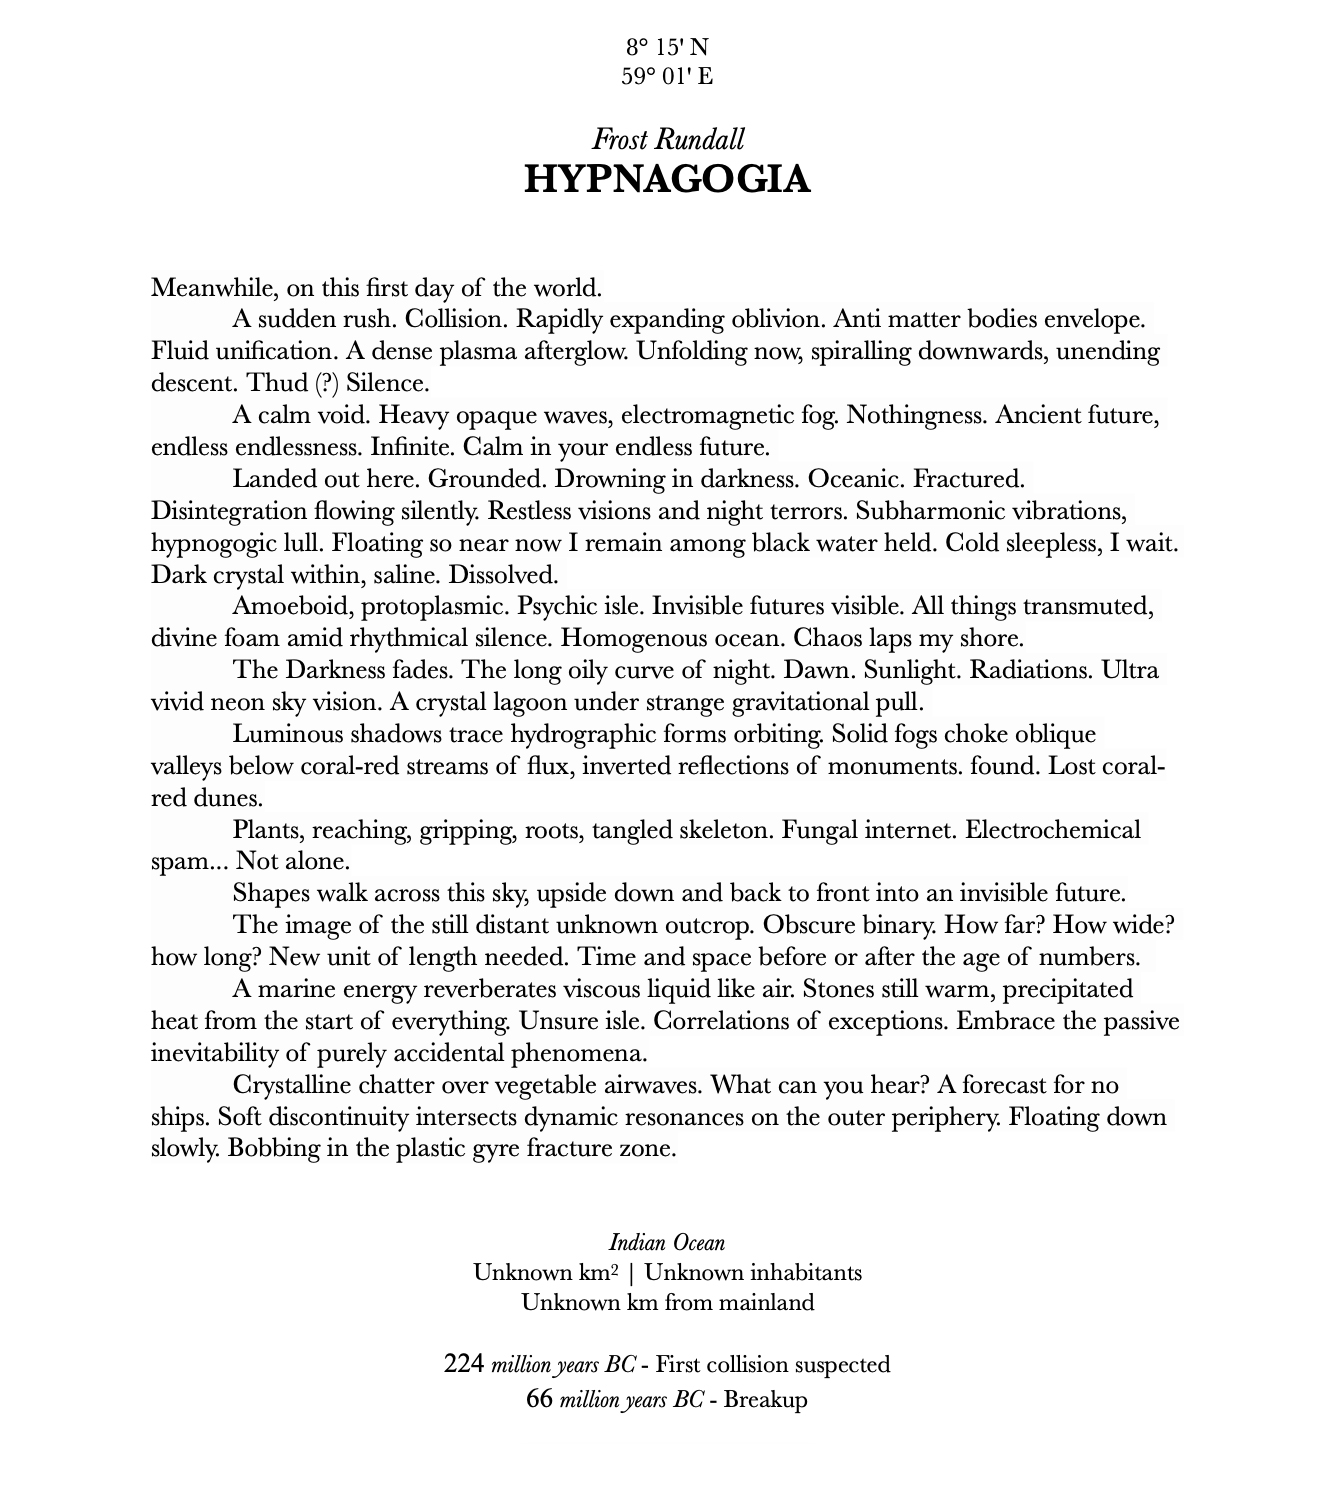 Archipelago : an atlas of imagined islands - Hypnagogia